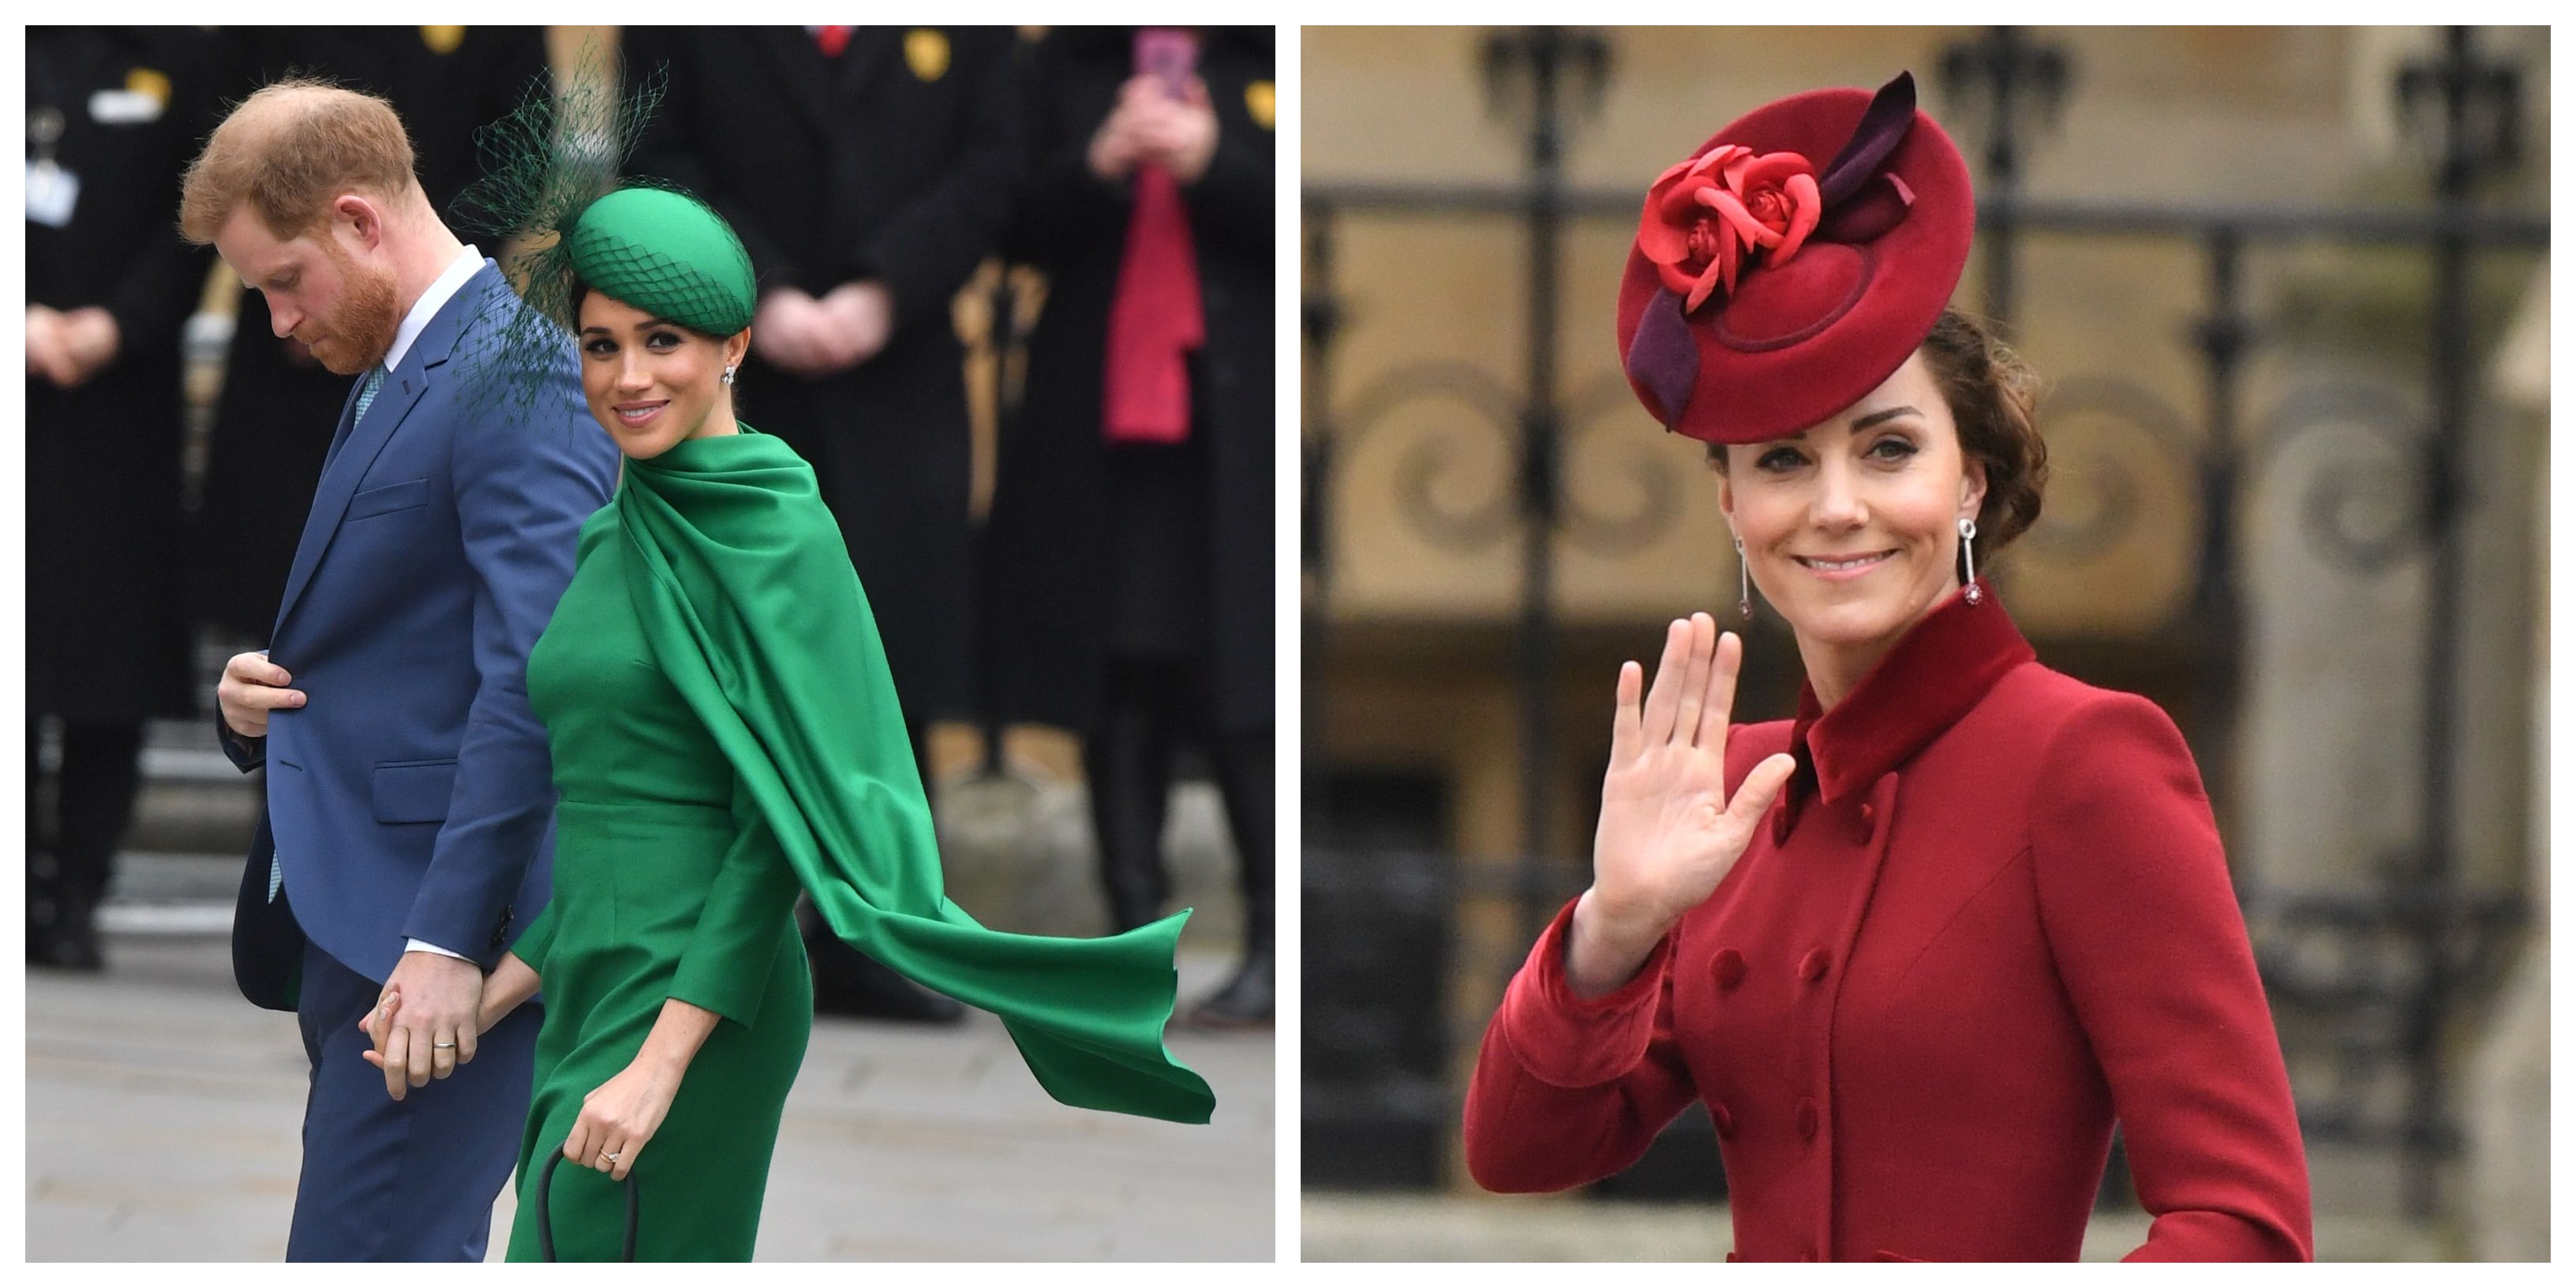 Kate u crvenom ili Meghan u zelenom: Koja je vojvotkinja pokazala bolji outfit?